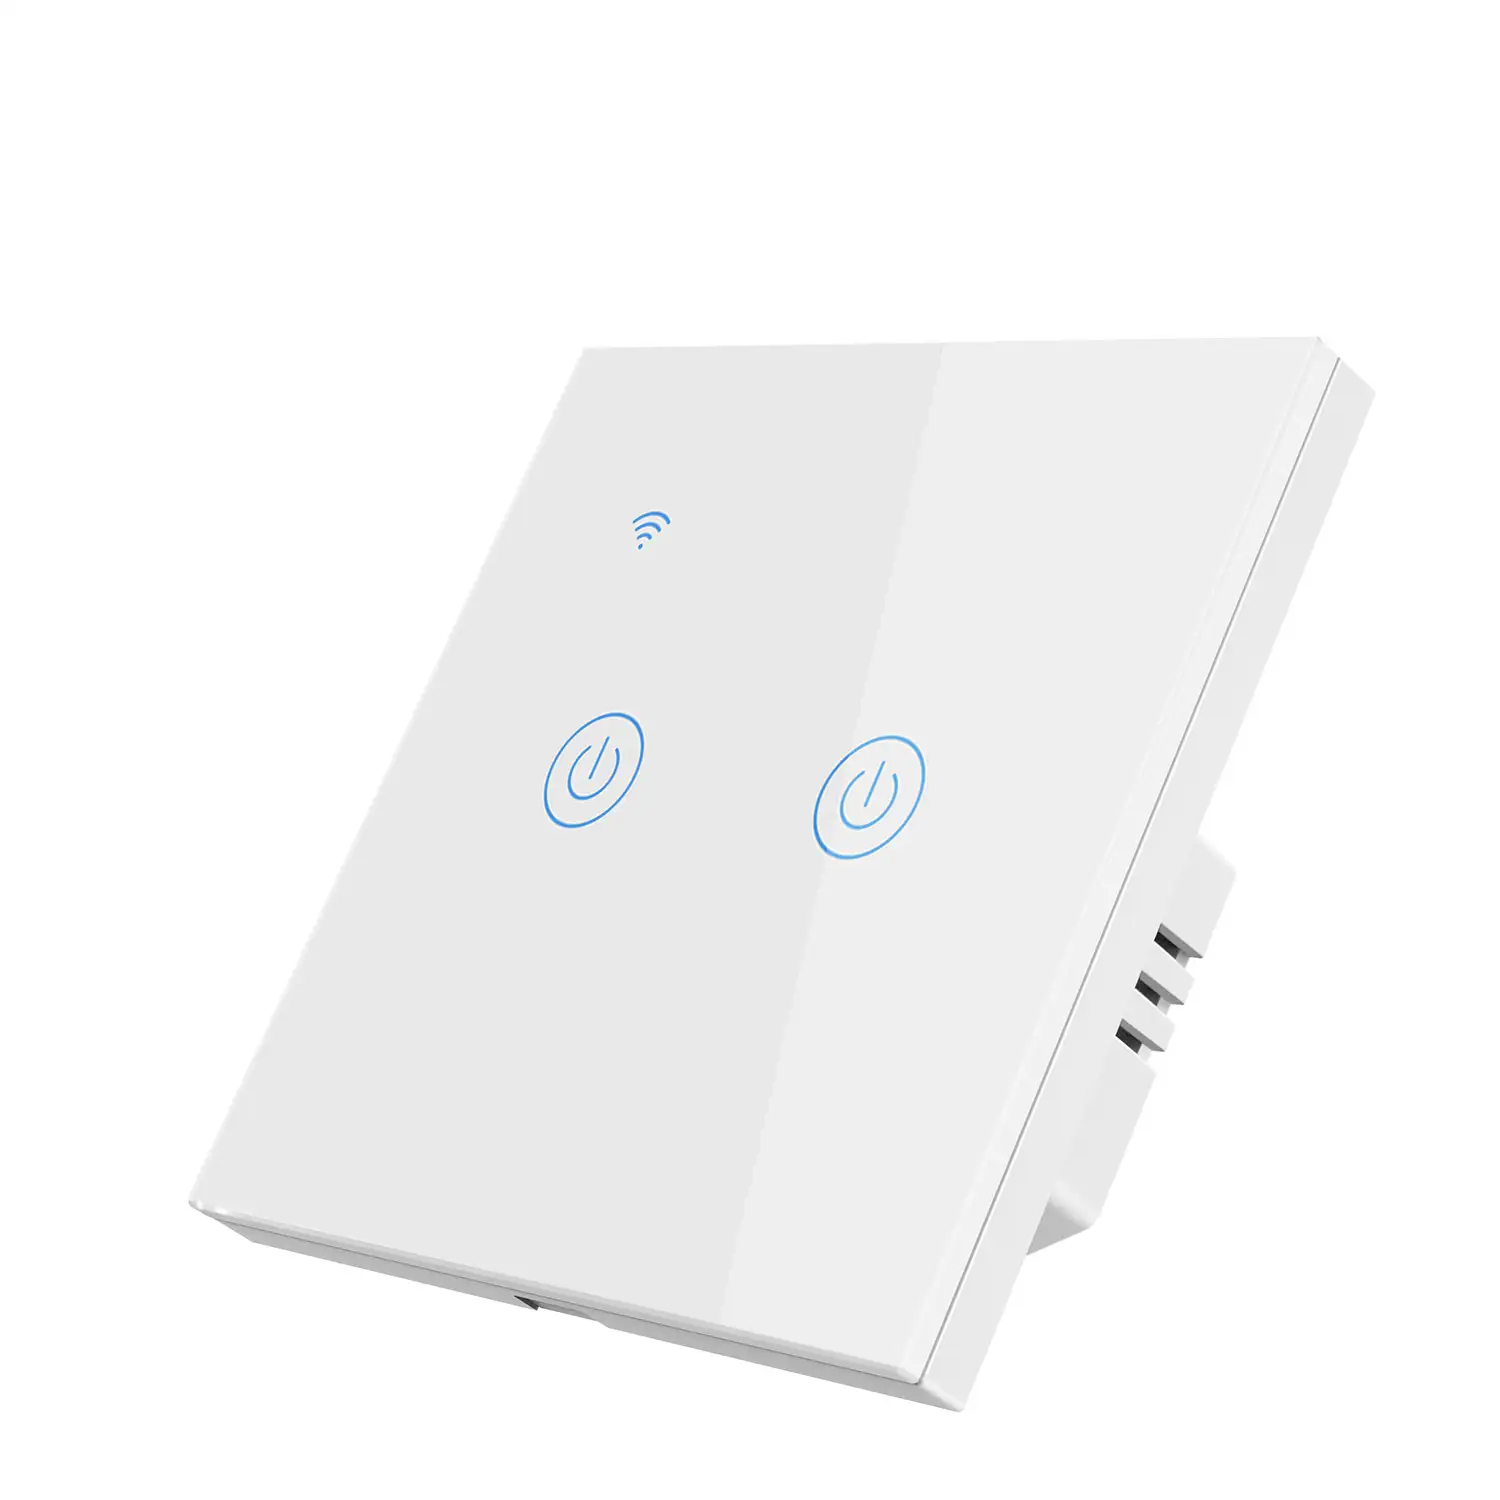 Interruptor Wifi Smarthome con 2 pulsadores compatible con Amazon Alexa y Google Home